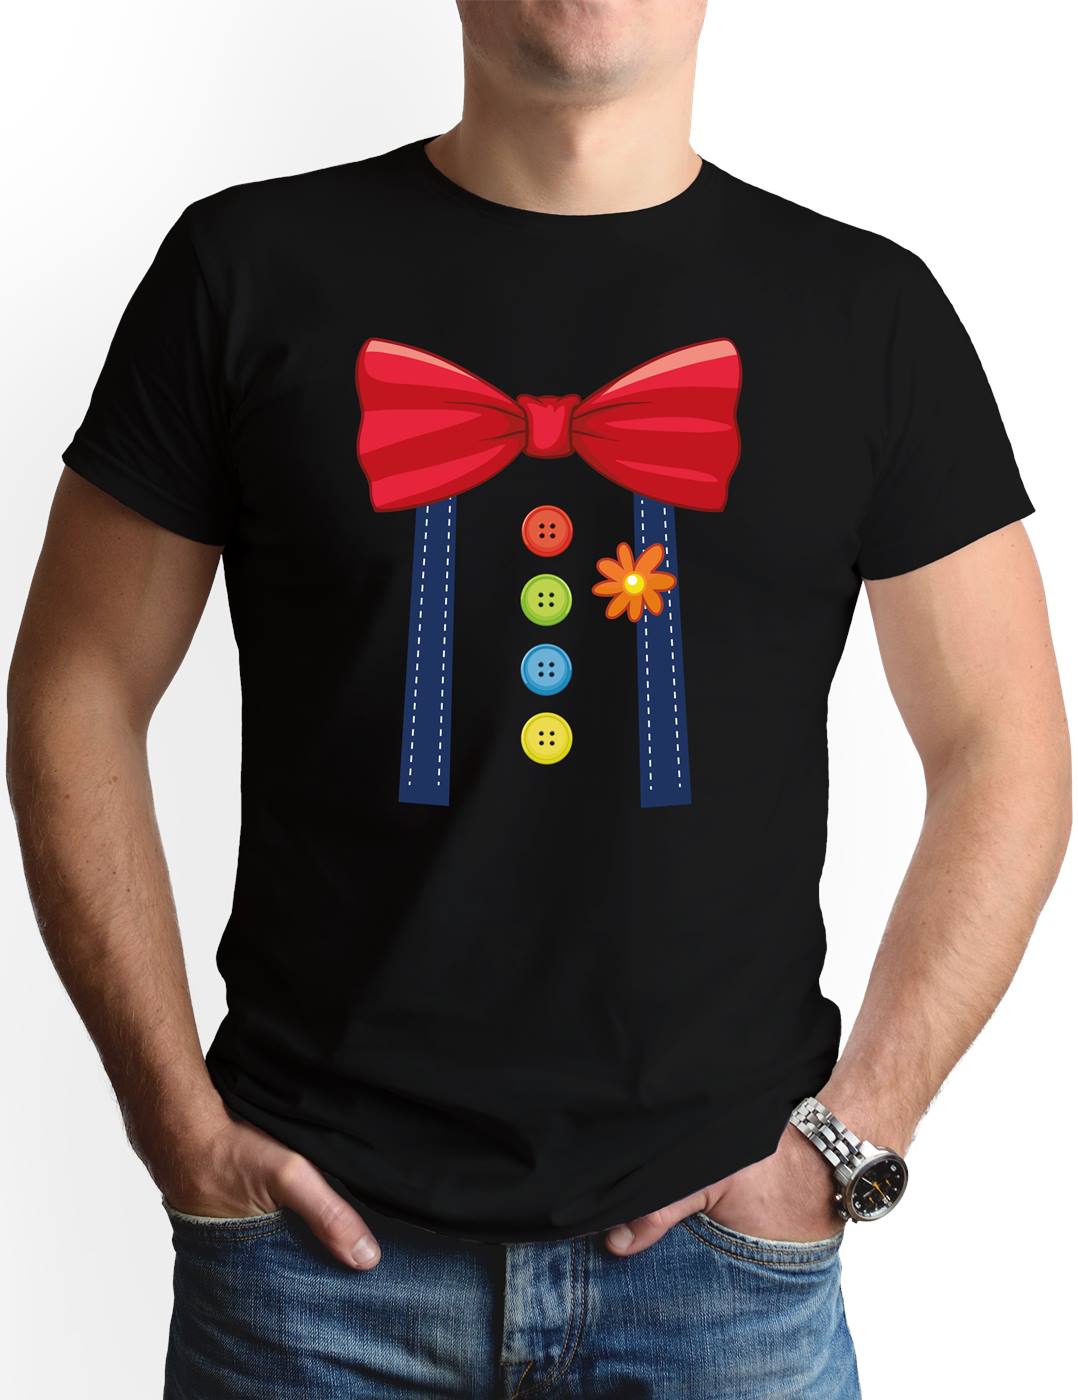 T-Shirt Herren - Clown Kostüm (Motiv)